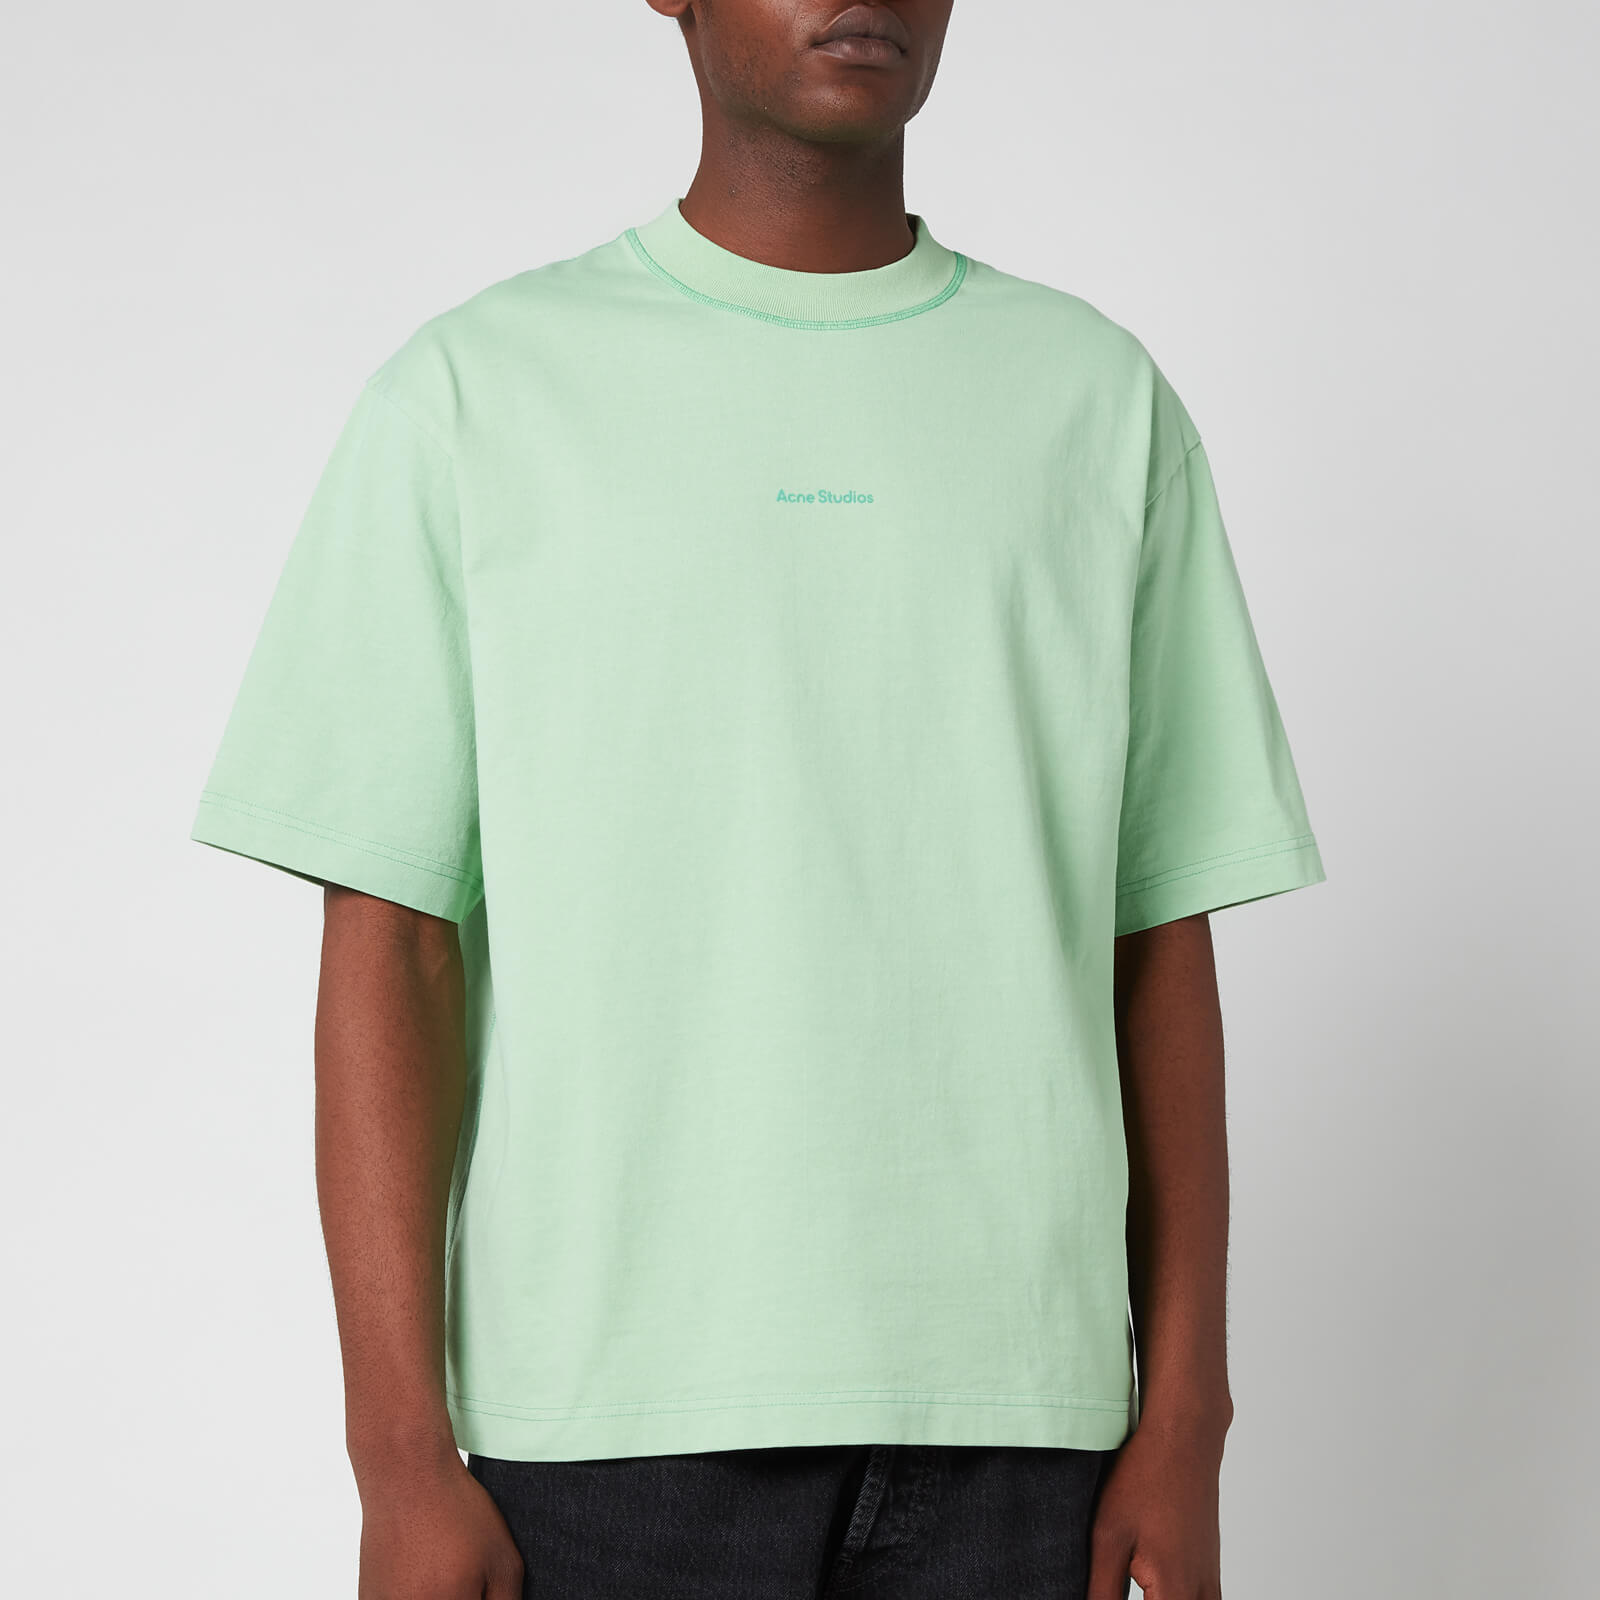 Acne Studios Men's Printed Logo T-Shirt - Mint Green - L